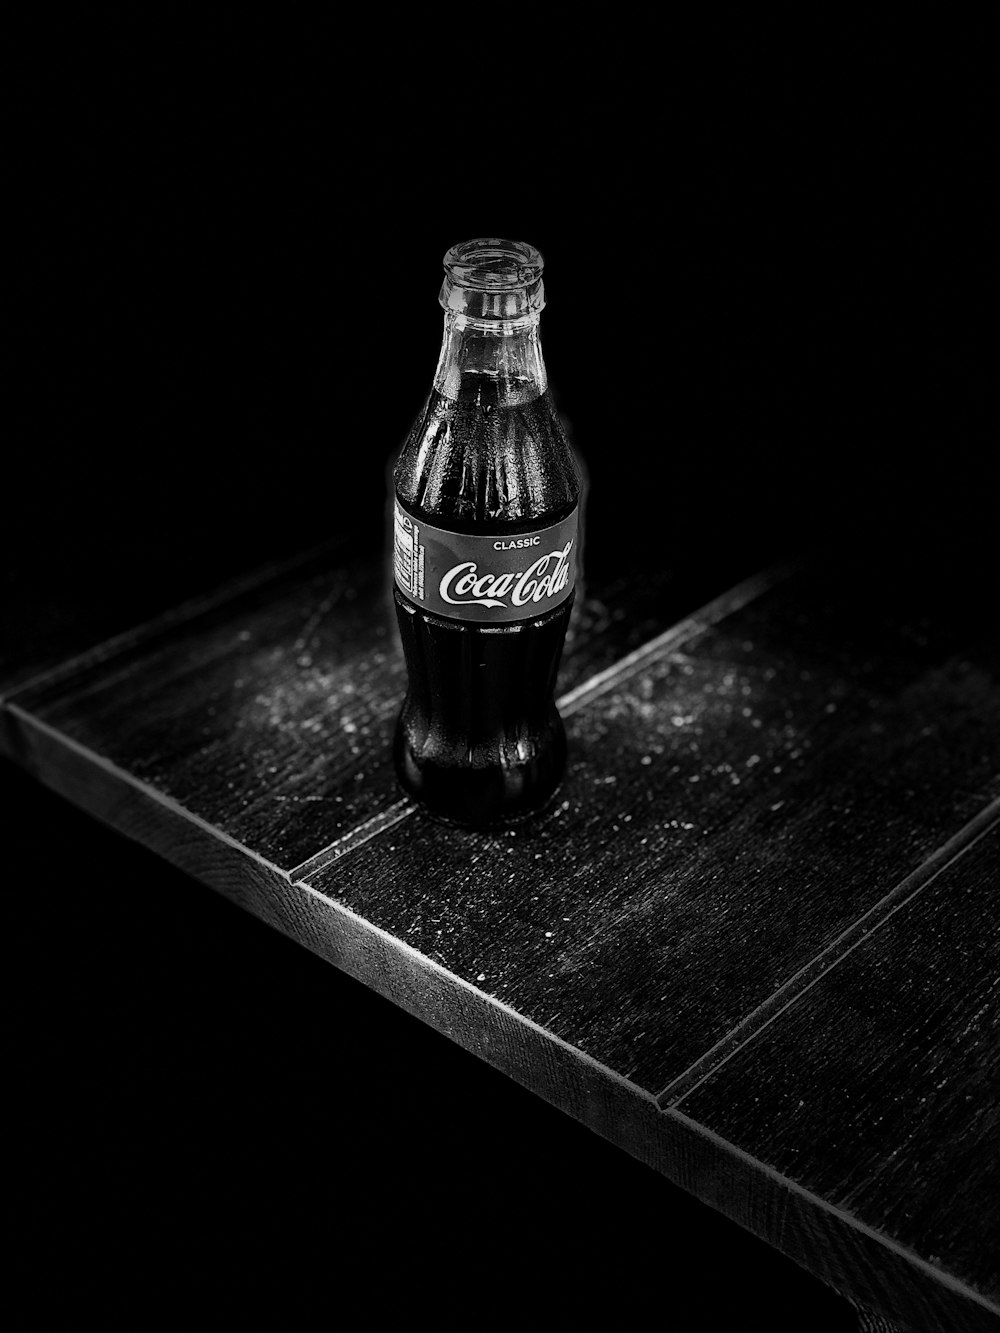 fotografia em tons de cinza da garrafa de Coca-Cola na mesa